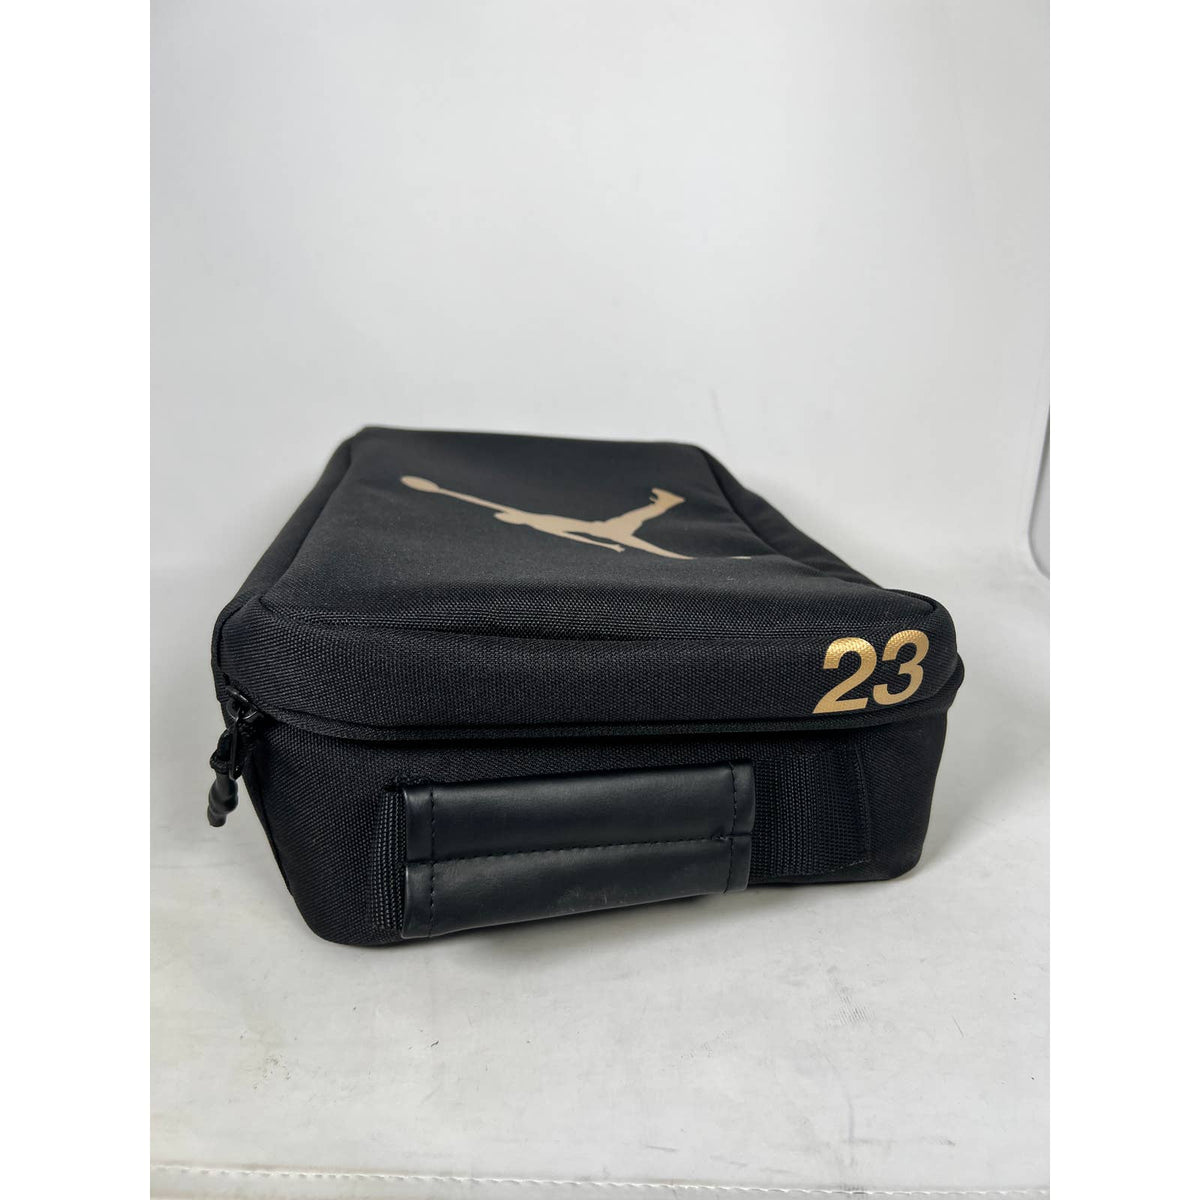 Air Jordan Shoe Bag Black and Gold